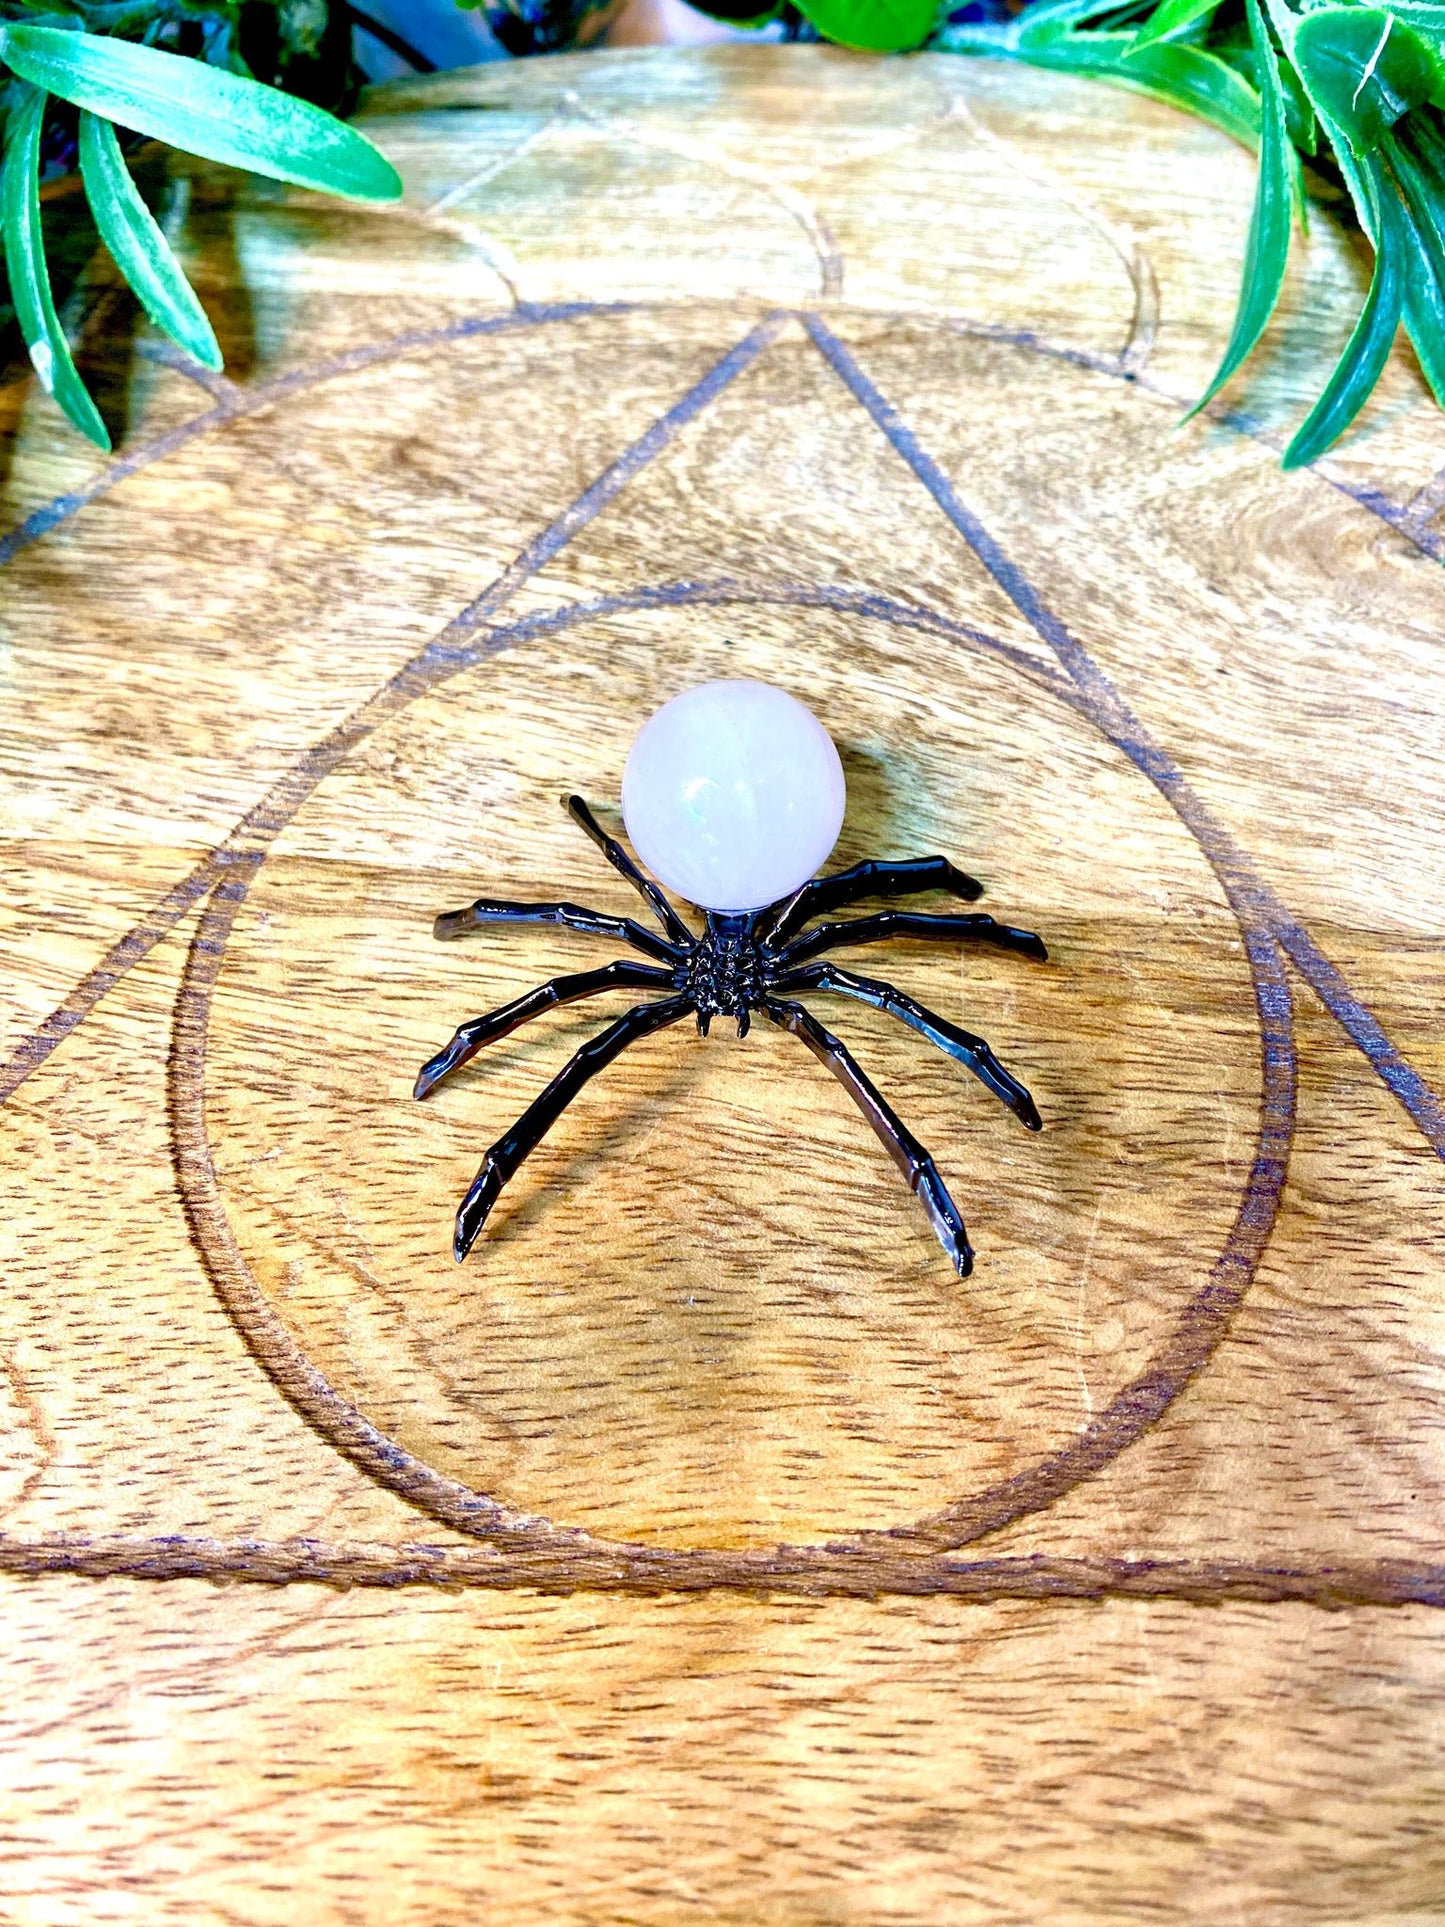 Crystal Sphere Spiders